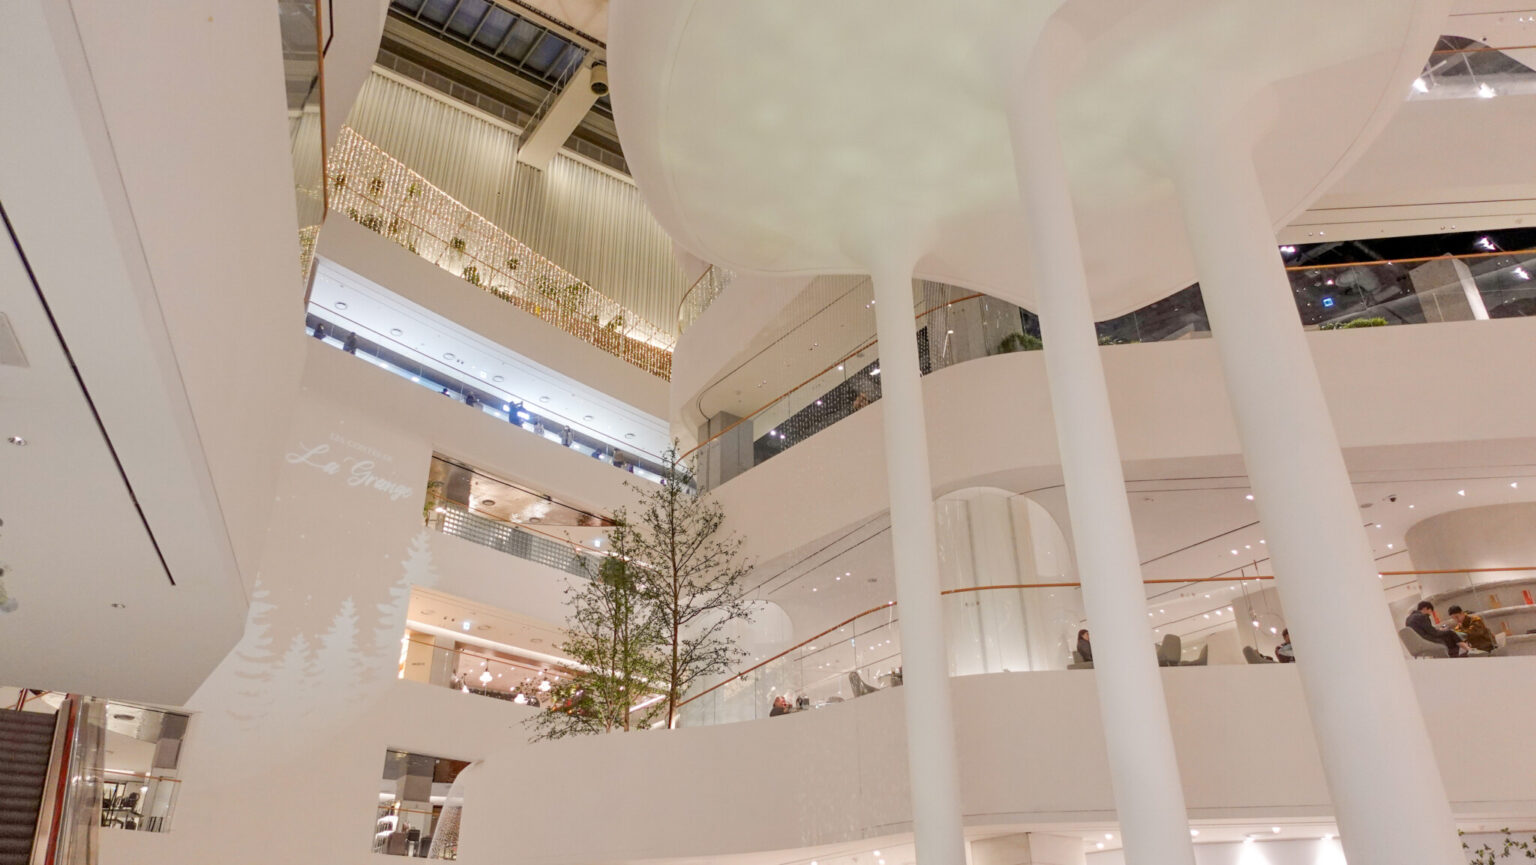 3階から1階にかけて流れる滝「ウォータフル・ガーデン」は圧巻。自然と共存する未来型をコンセプトに掲げ、天井から自然光が入るような設計に。